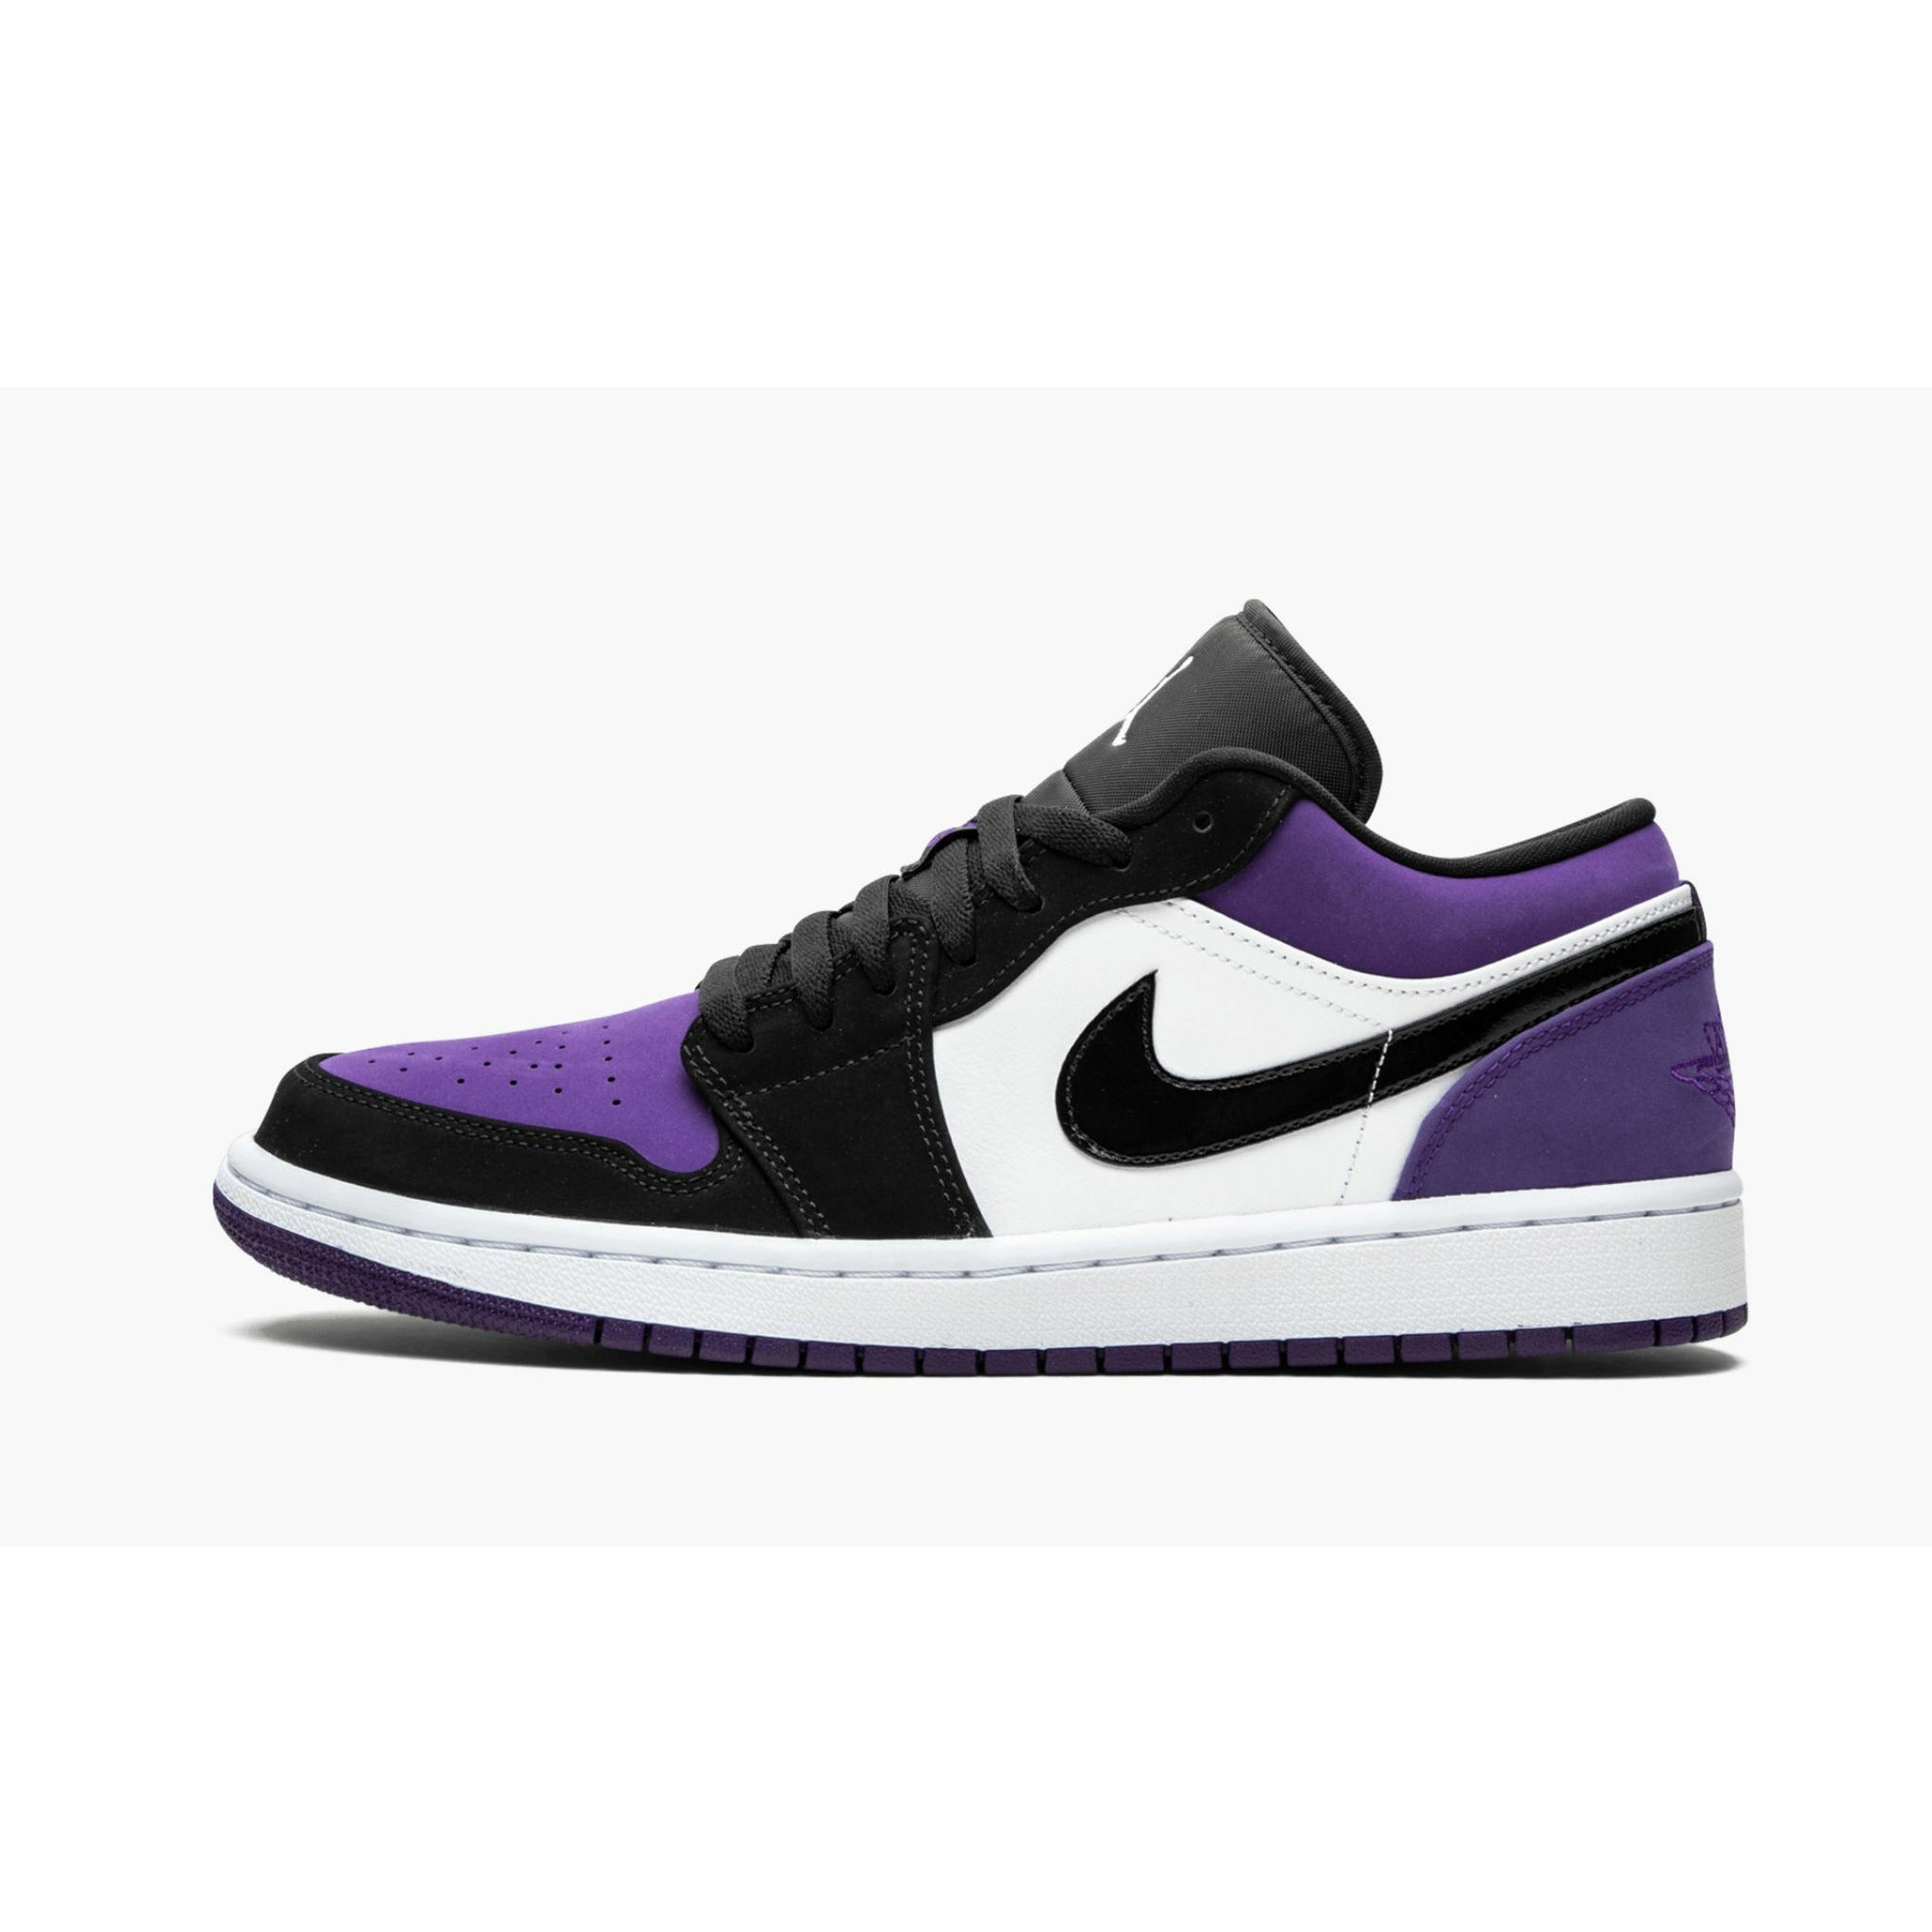 AIR JORDAN 1 LOW "Court Purple"